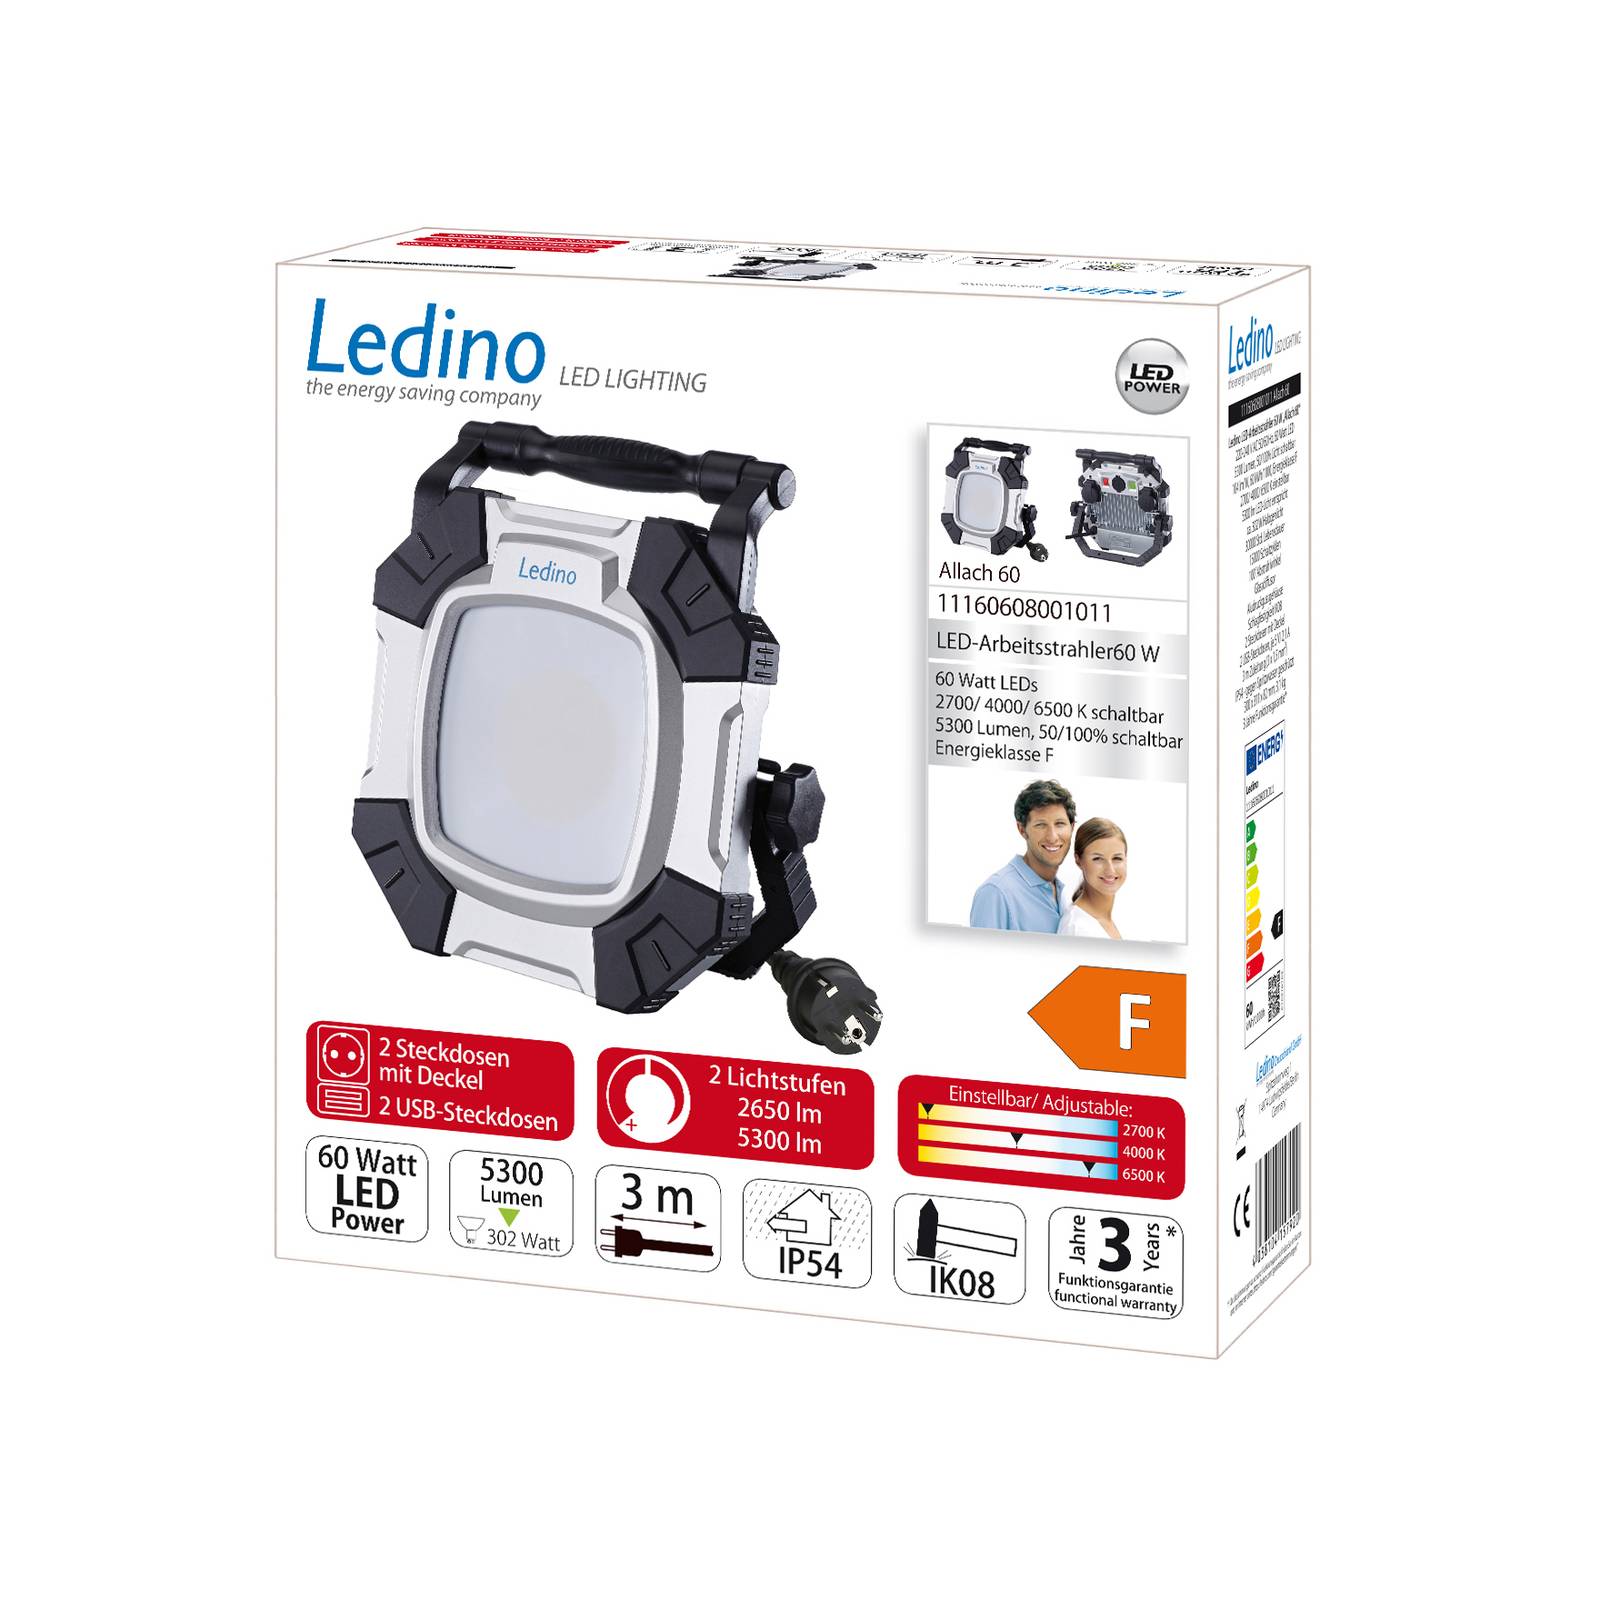 LED-Arbeitsstrahler Allach 60 CCT 2-Stufenschalter von Ledino